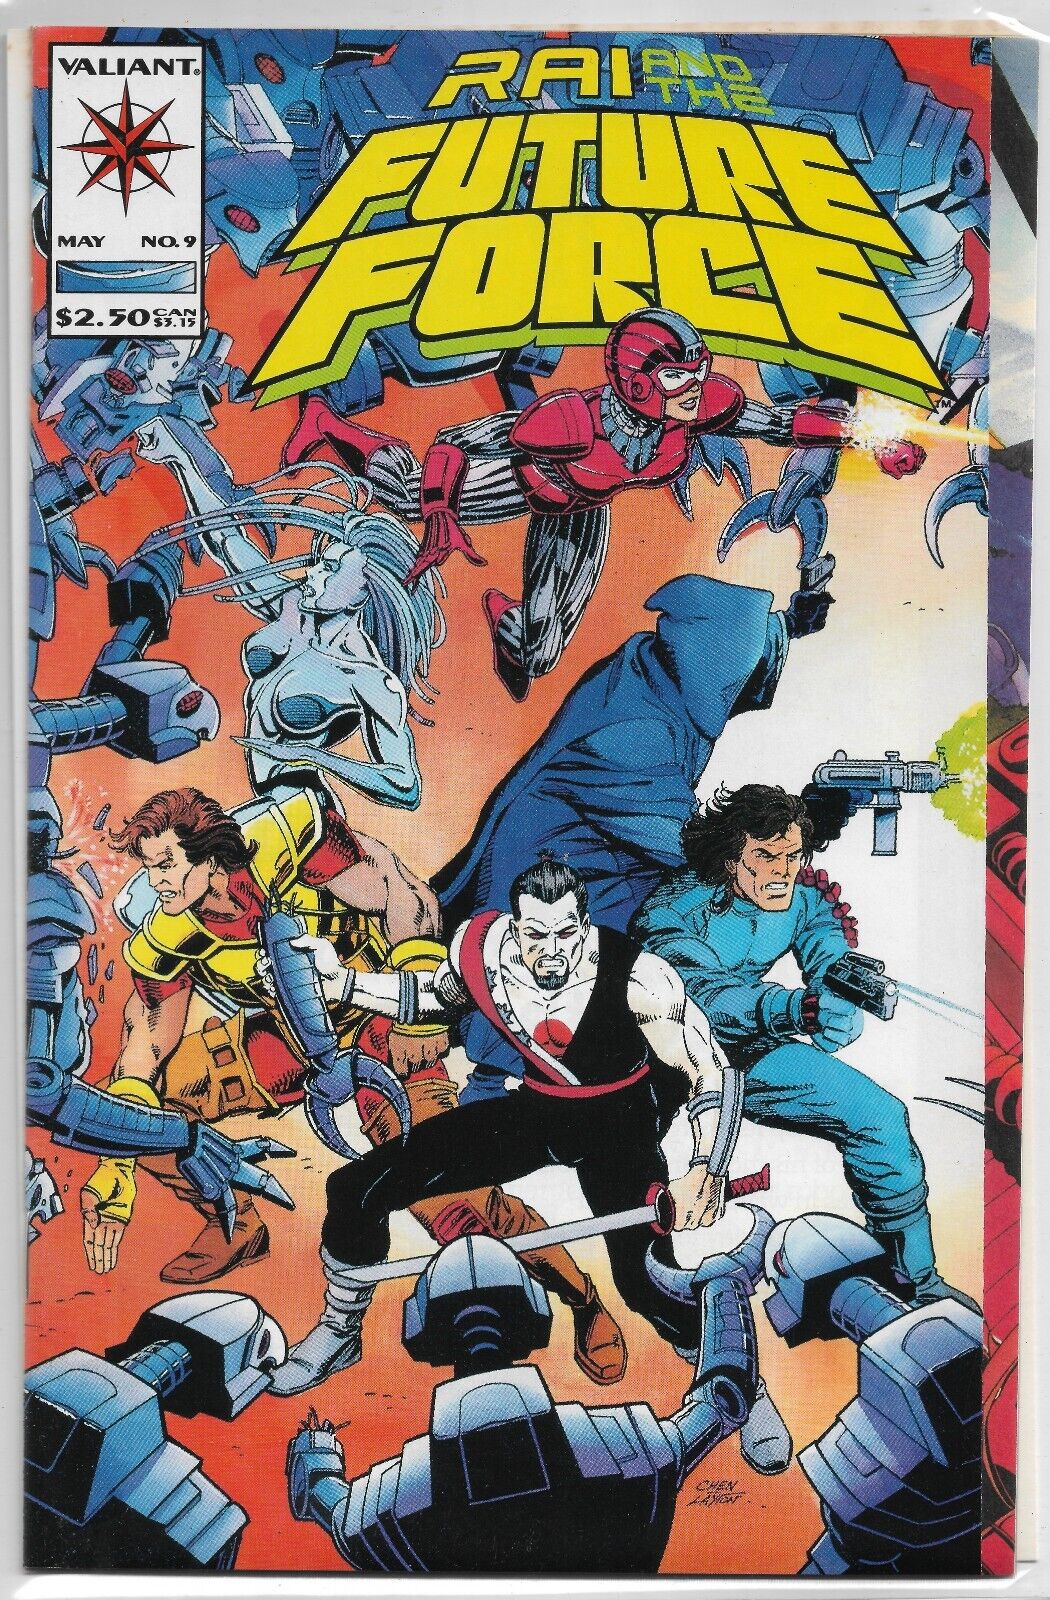 RAI  AND THE FUTURE FORCE #9 - 1993 Valiant Comics Gatefold Cover